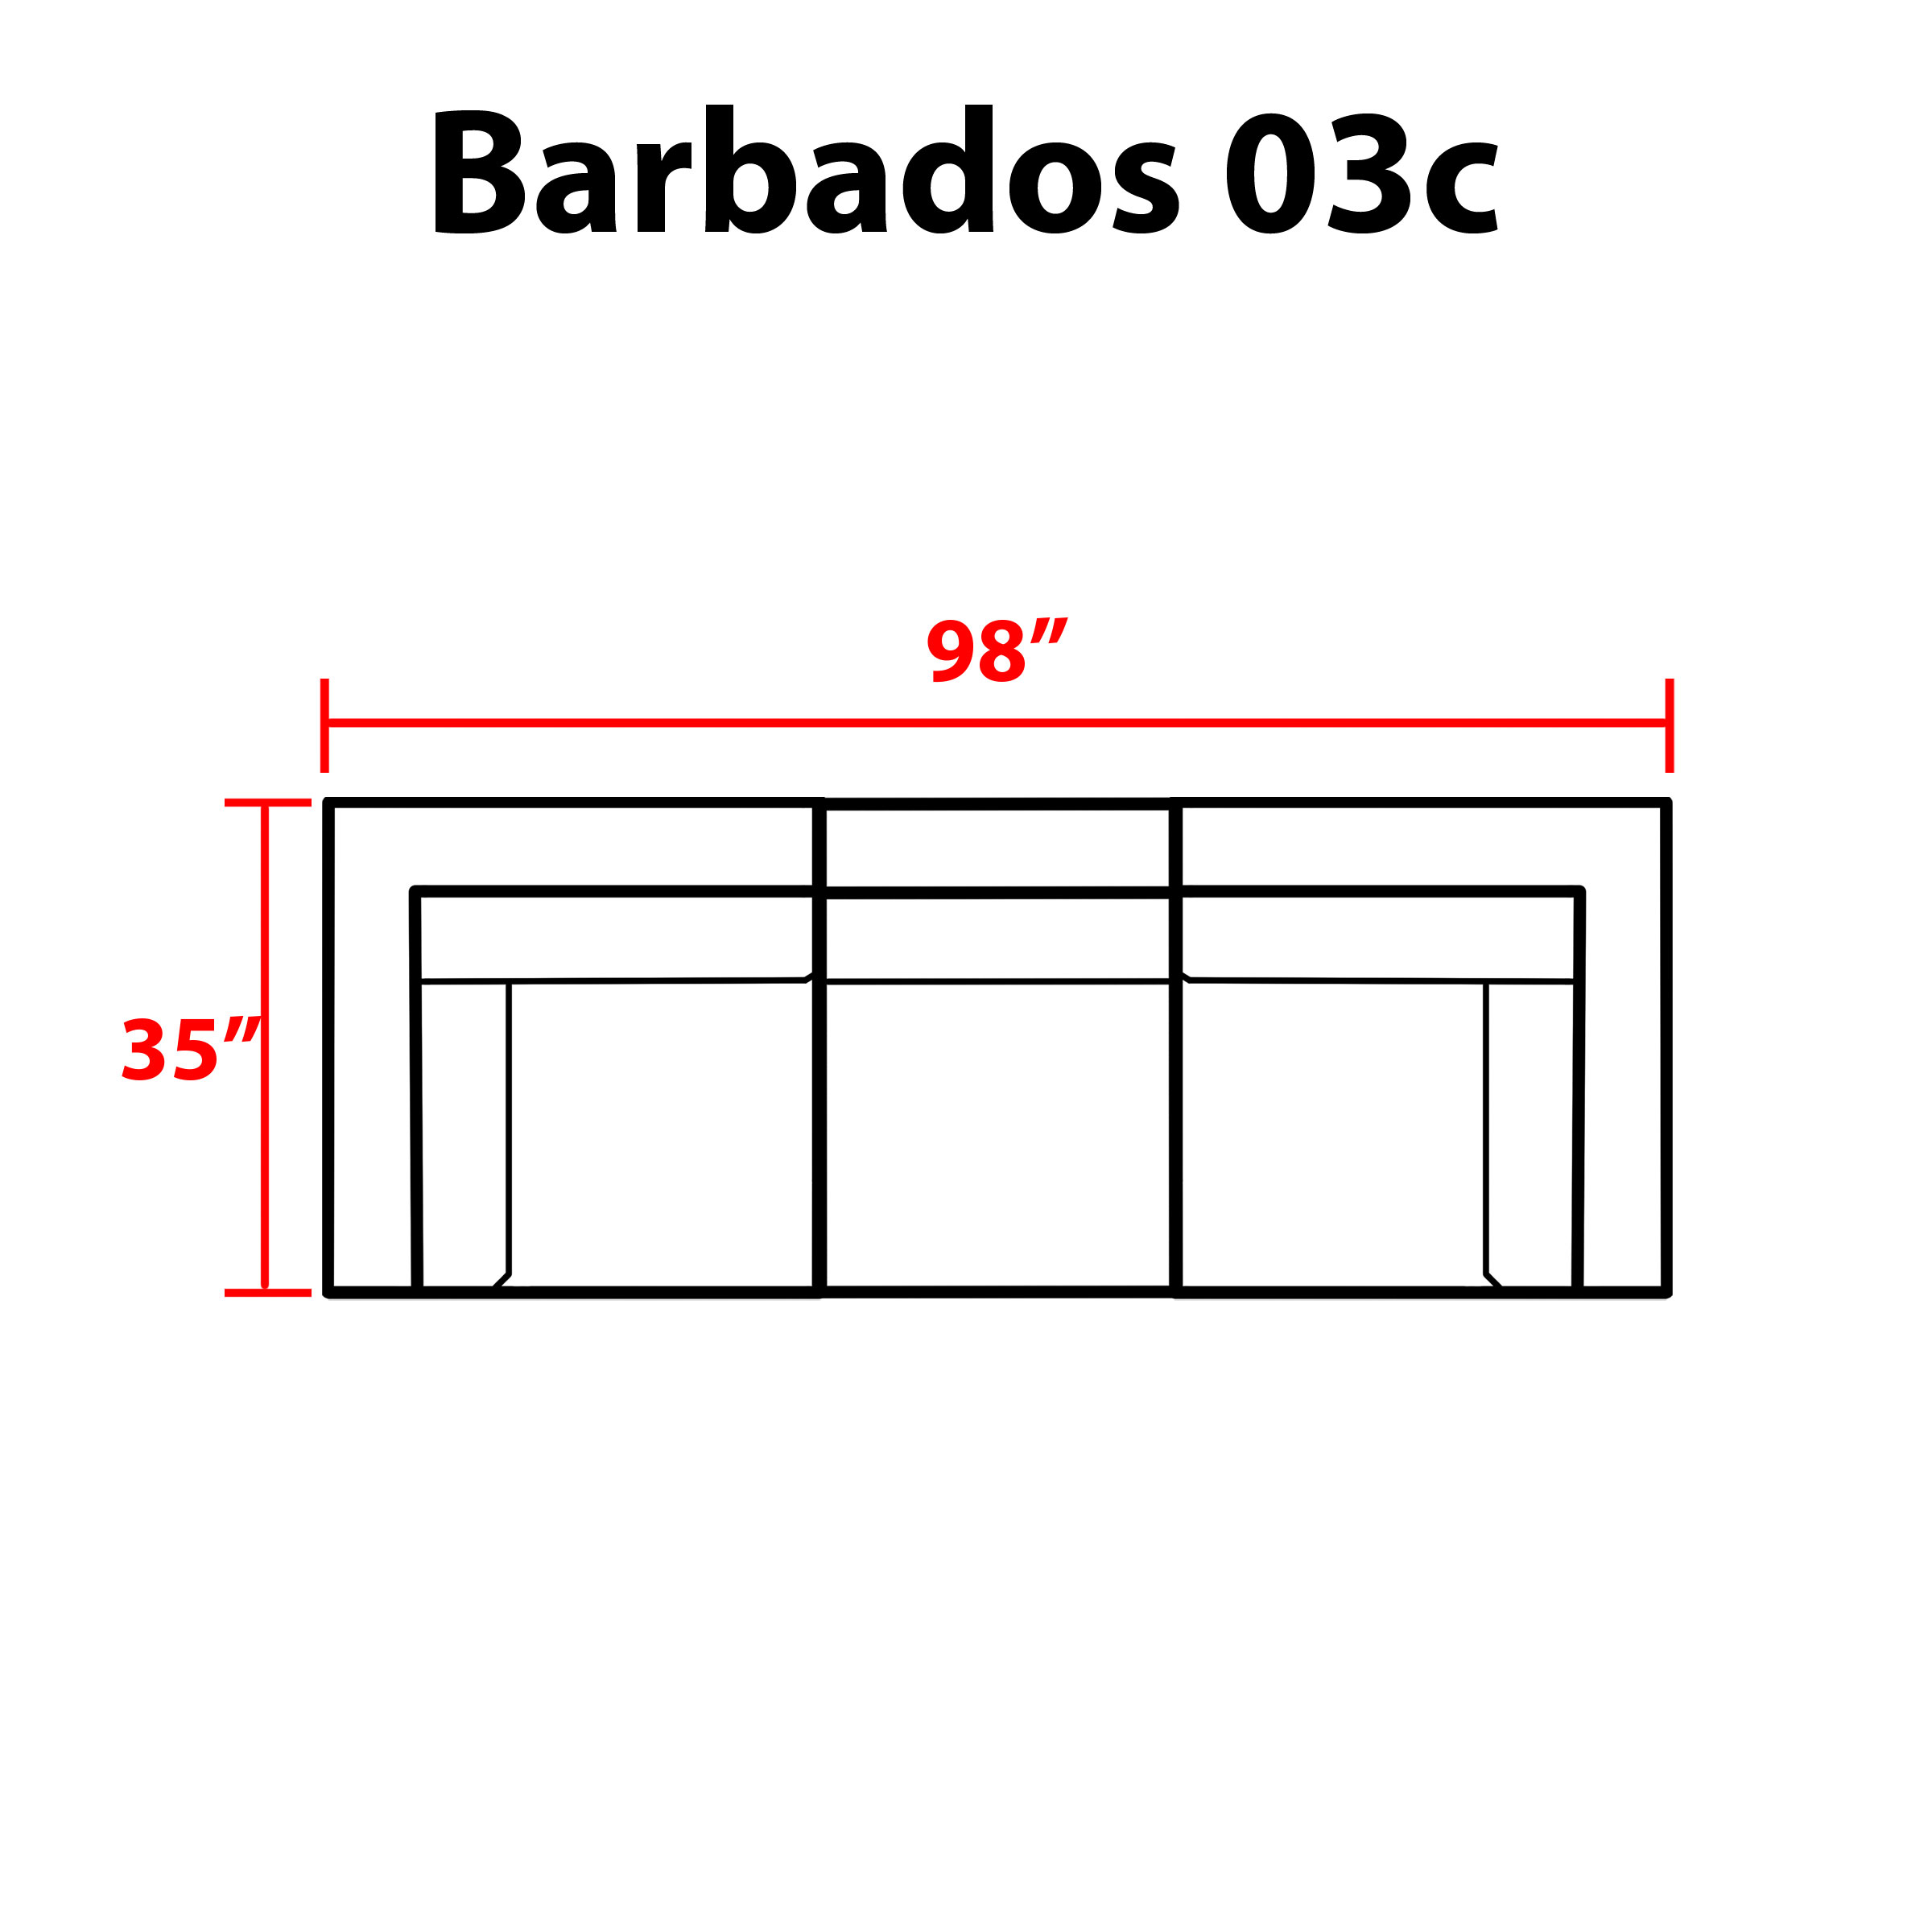 Barbados 3 Piece Outdoor Wicker Patio Furniture Set 03c - TK Classics